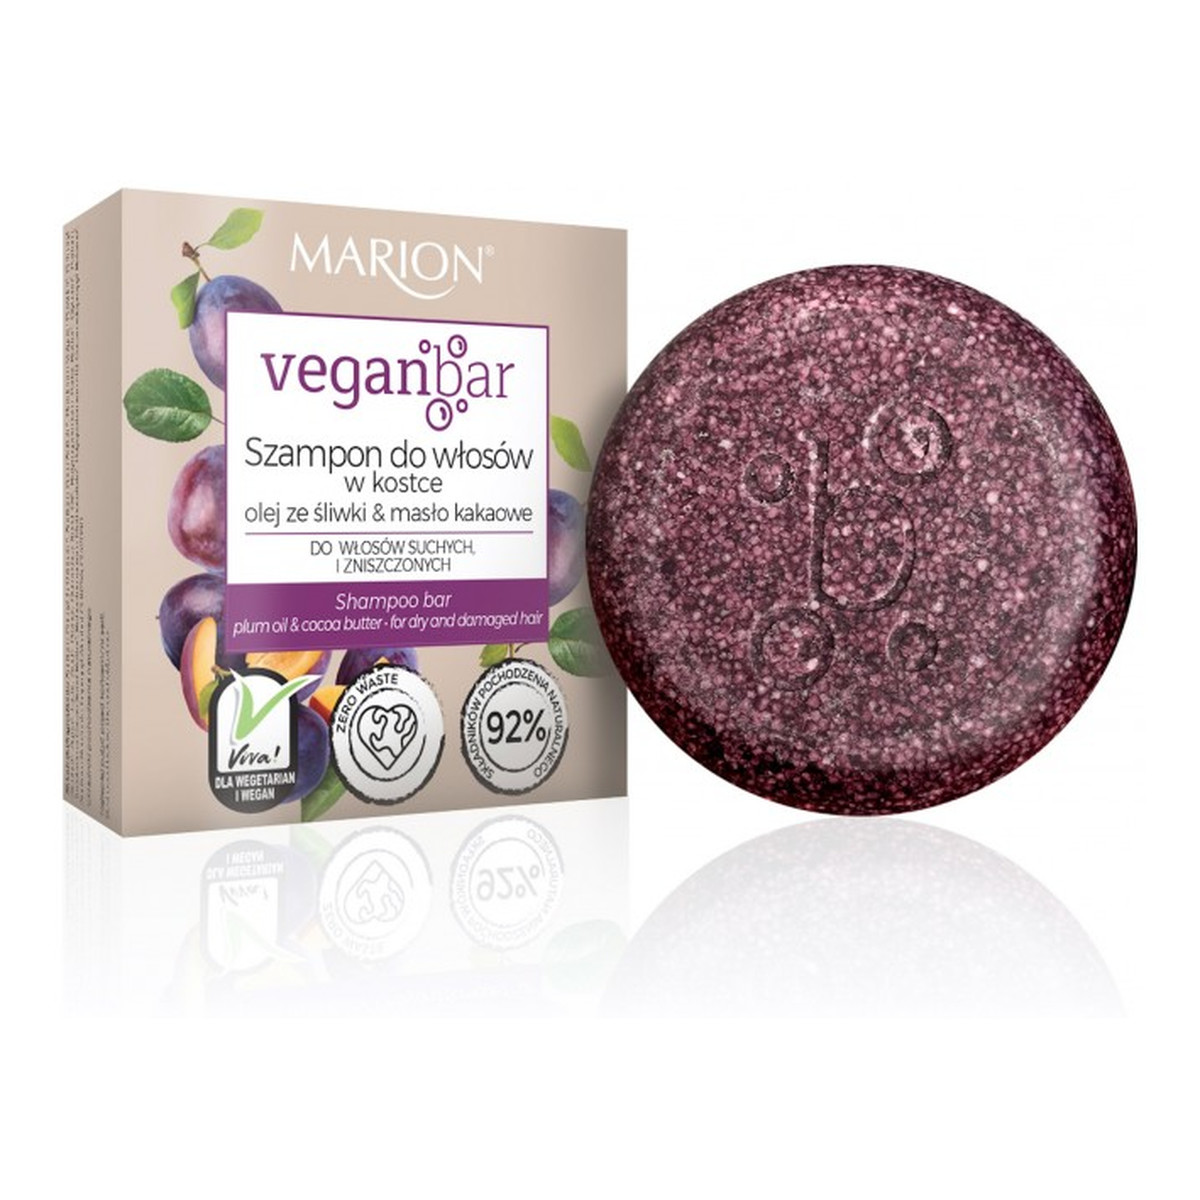 Marion Veganbar szampon do włosów suchych i zniszczonych w kostce olej ze śliwki & masło kakaowe 50g